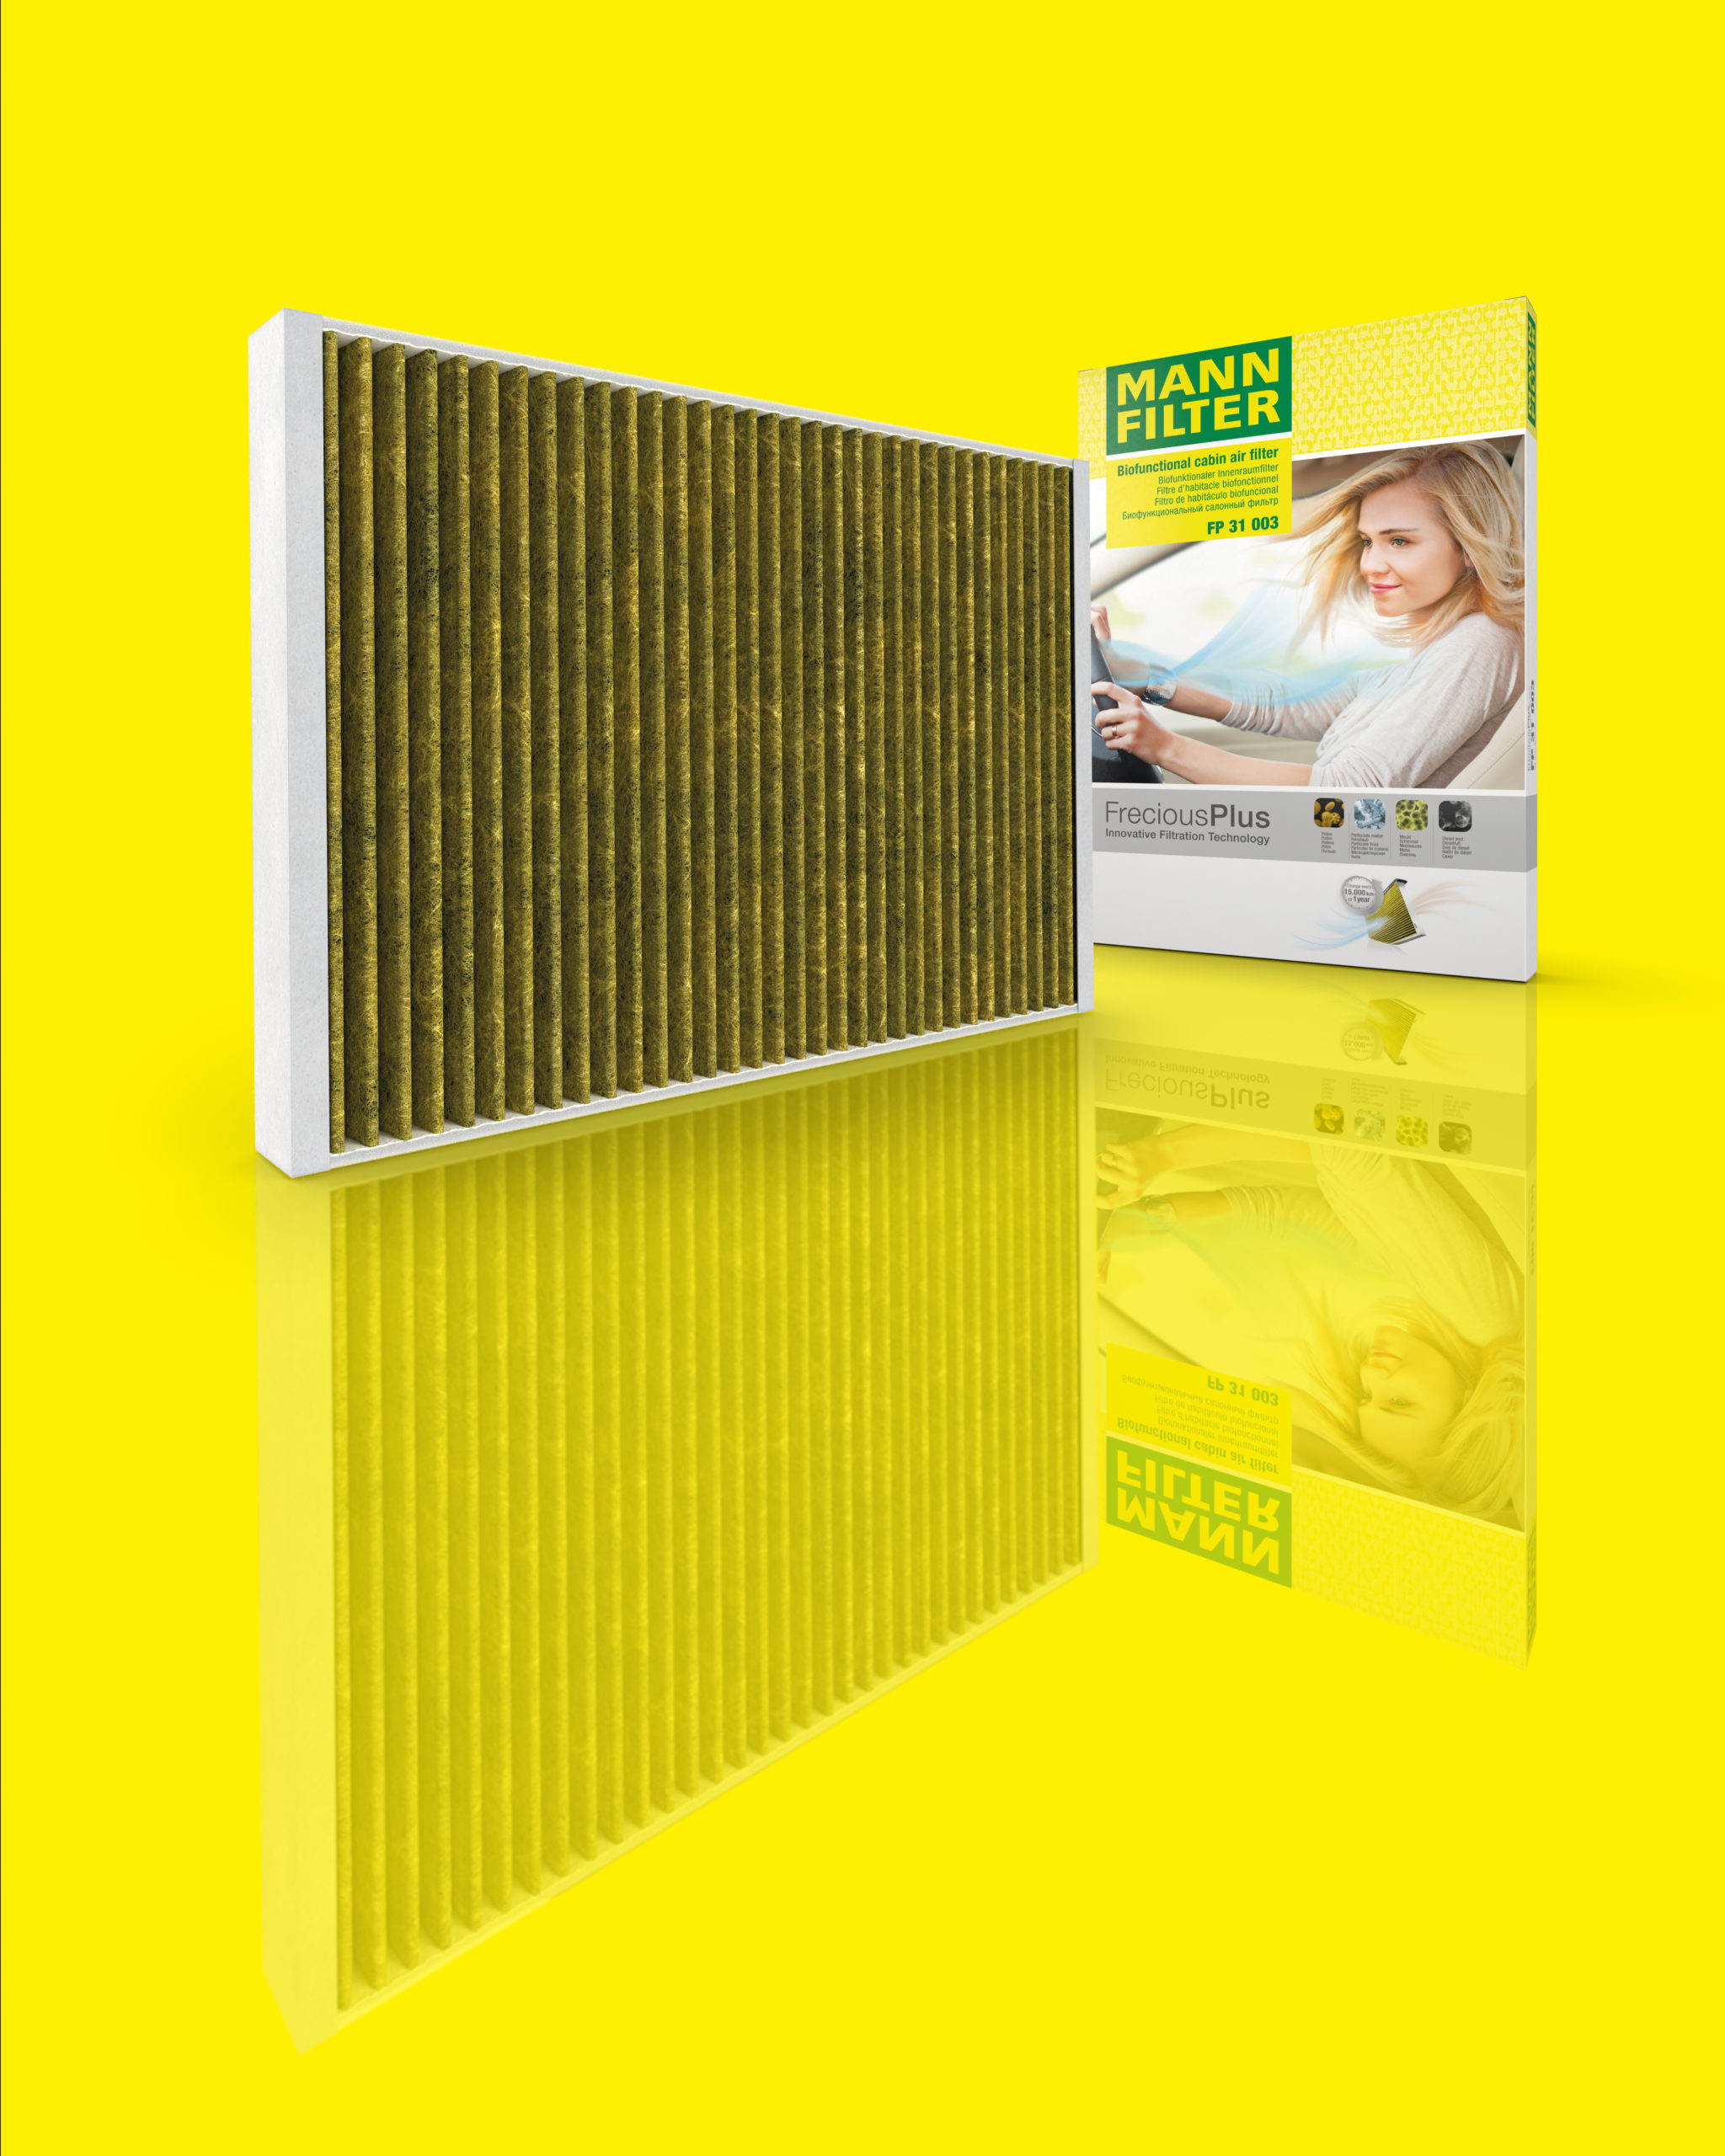 Ein länglicher geriffelter Filter vor gelben Hintergrund und spiegelnder Boden neben der Verpackung